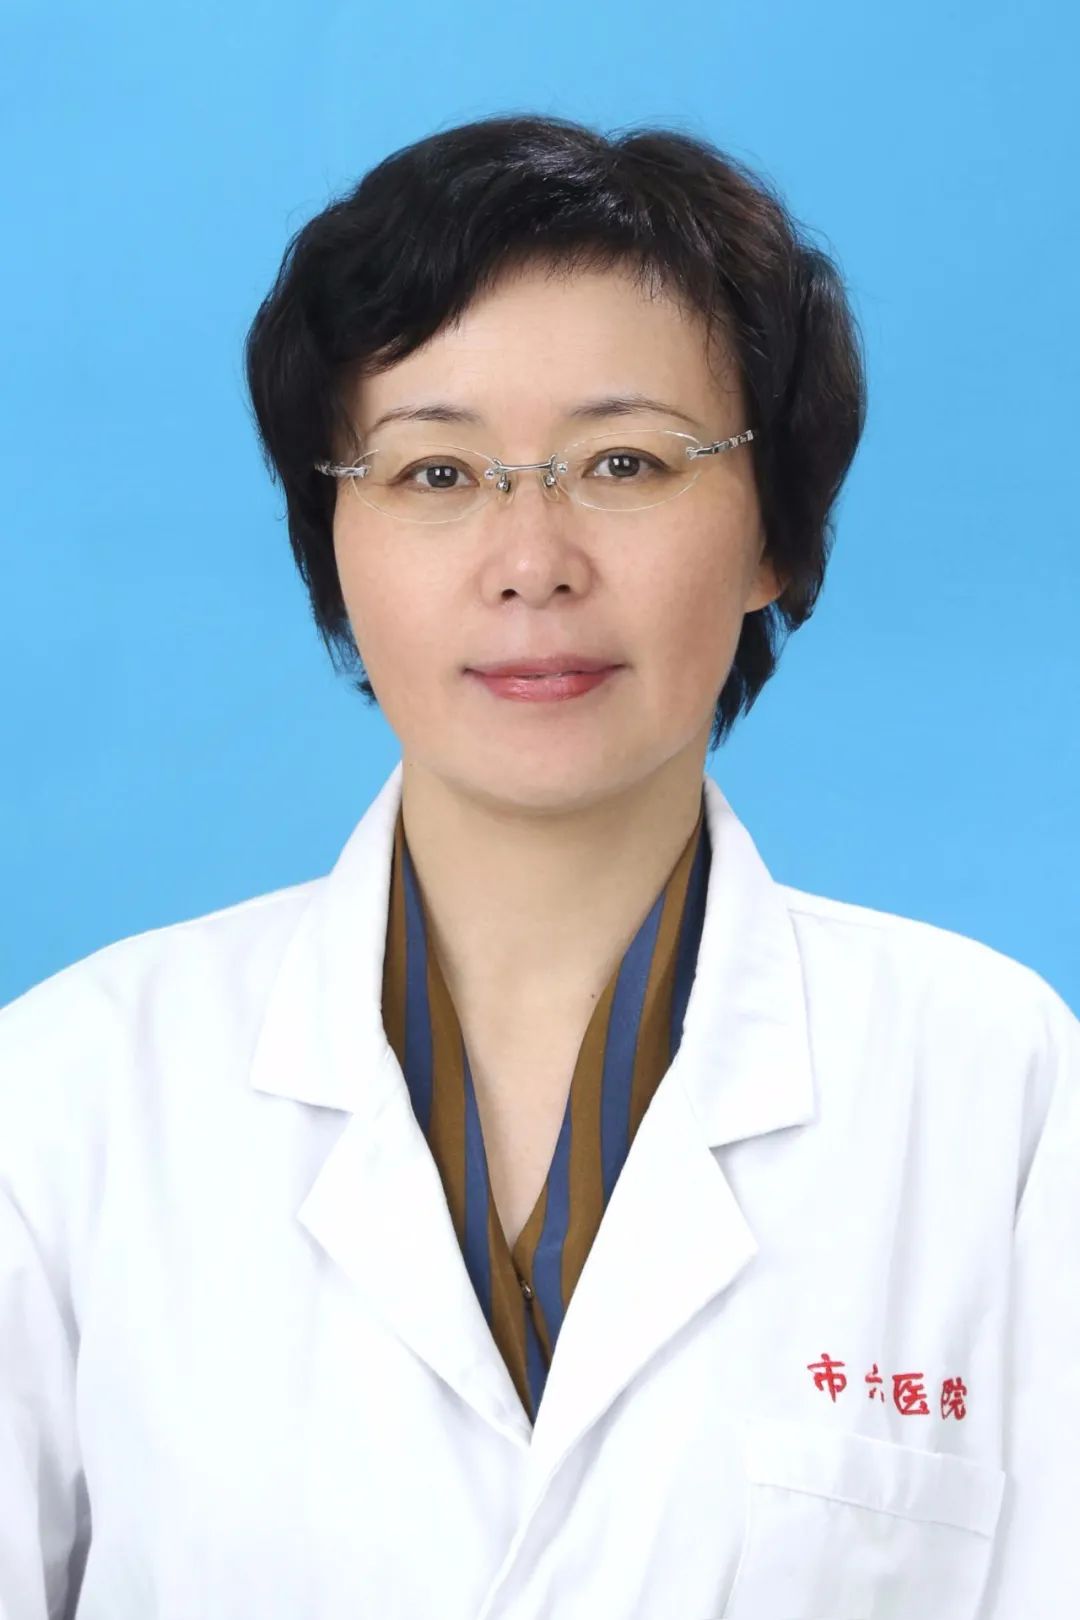 马燕红上海市第六人民医院康复医学科主任医师,硕士生导师.